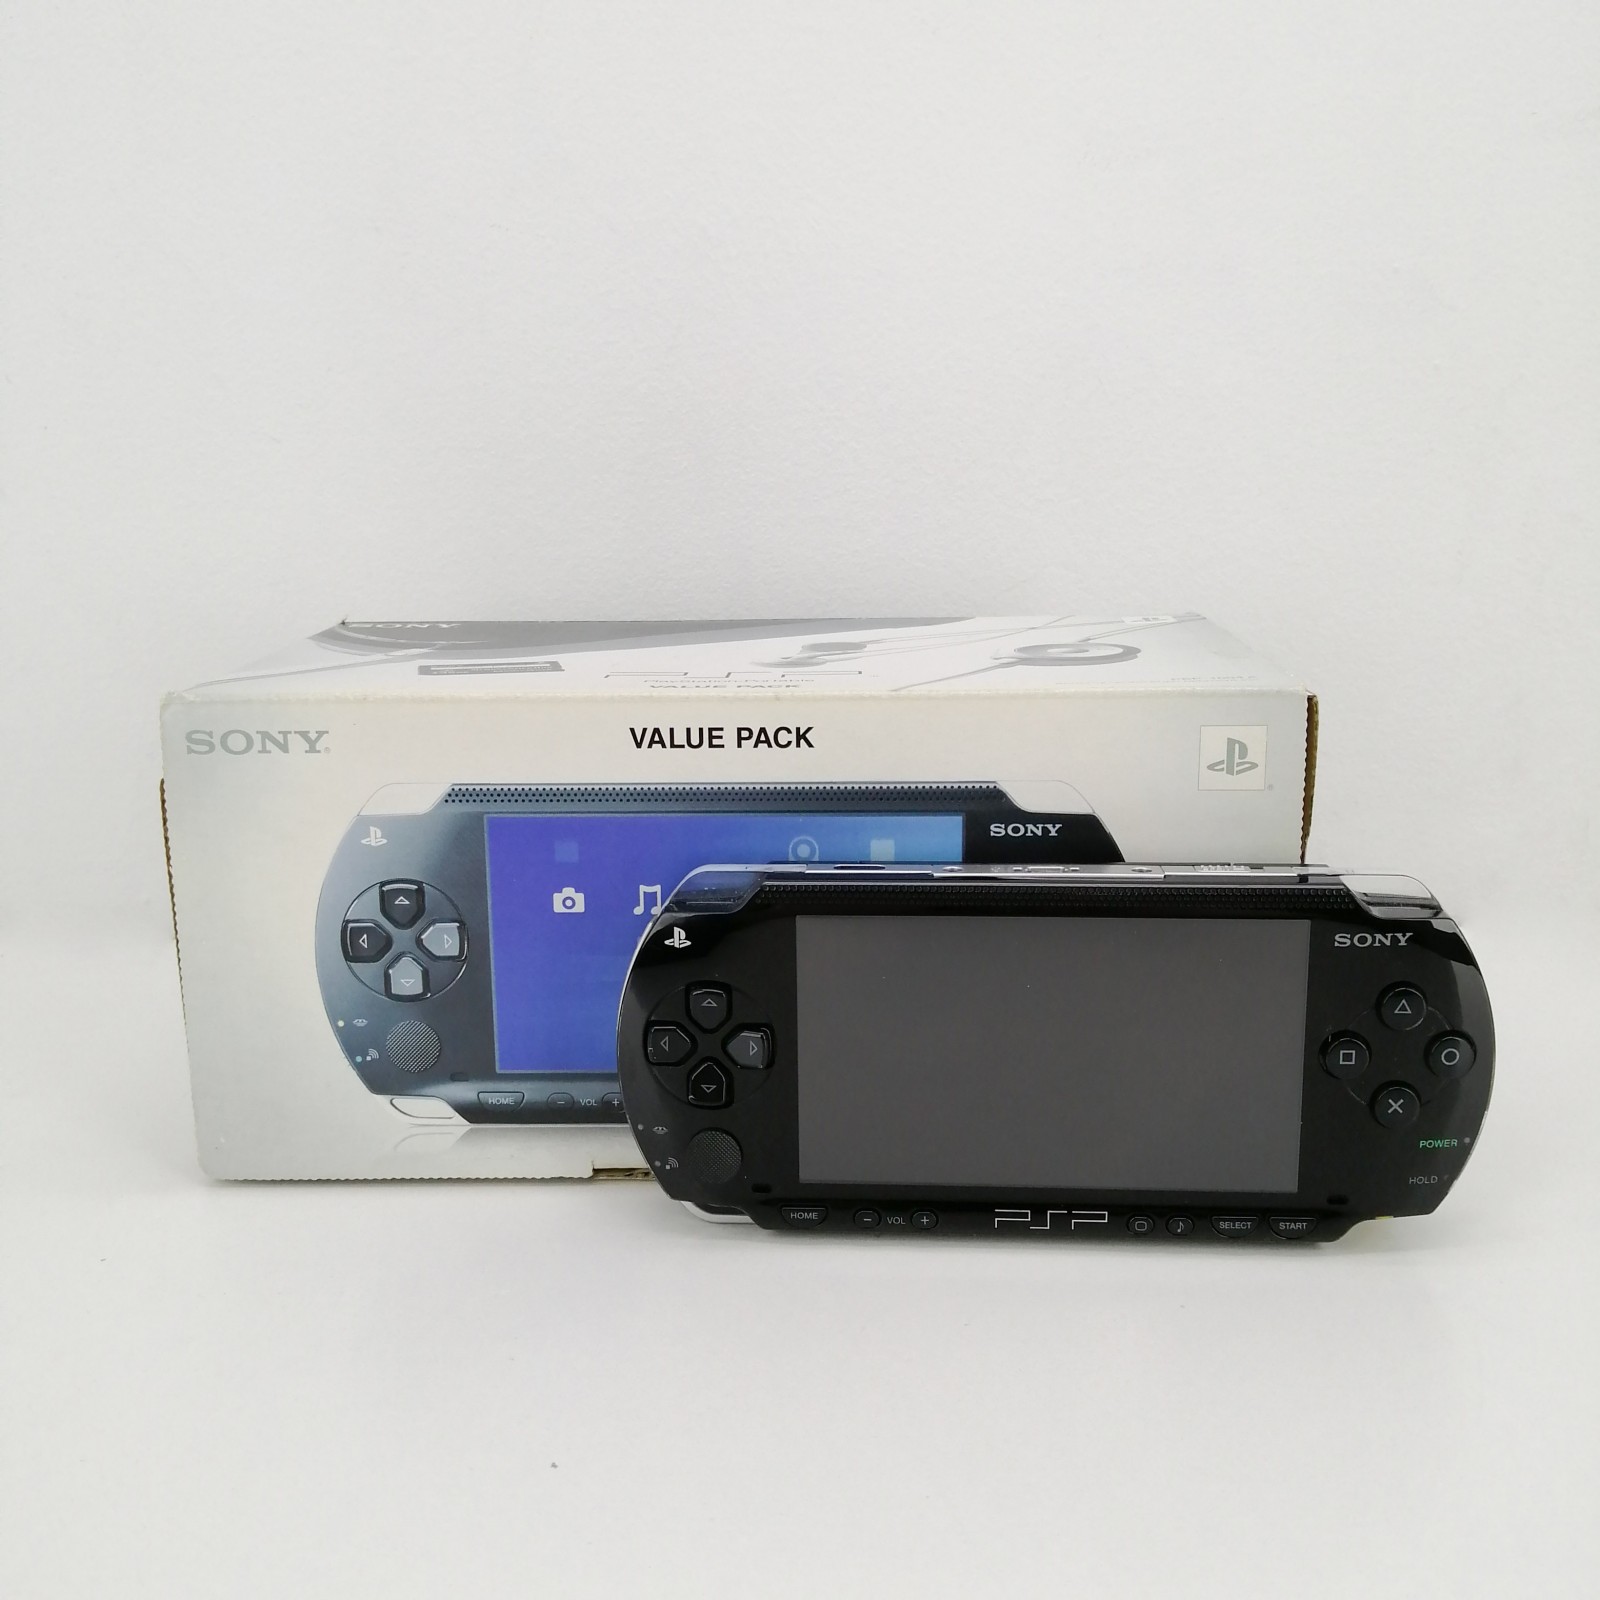 Consola Sony PSP 1004K Value Pack con caja original y segunda mano